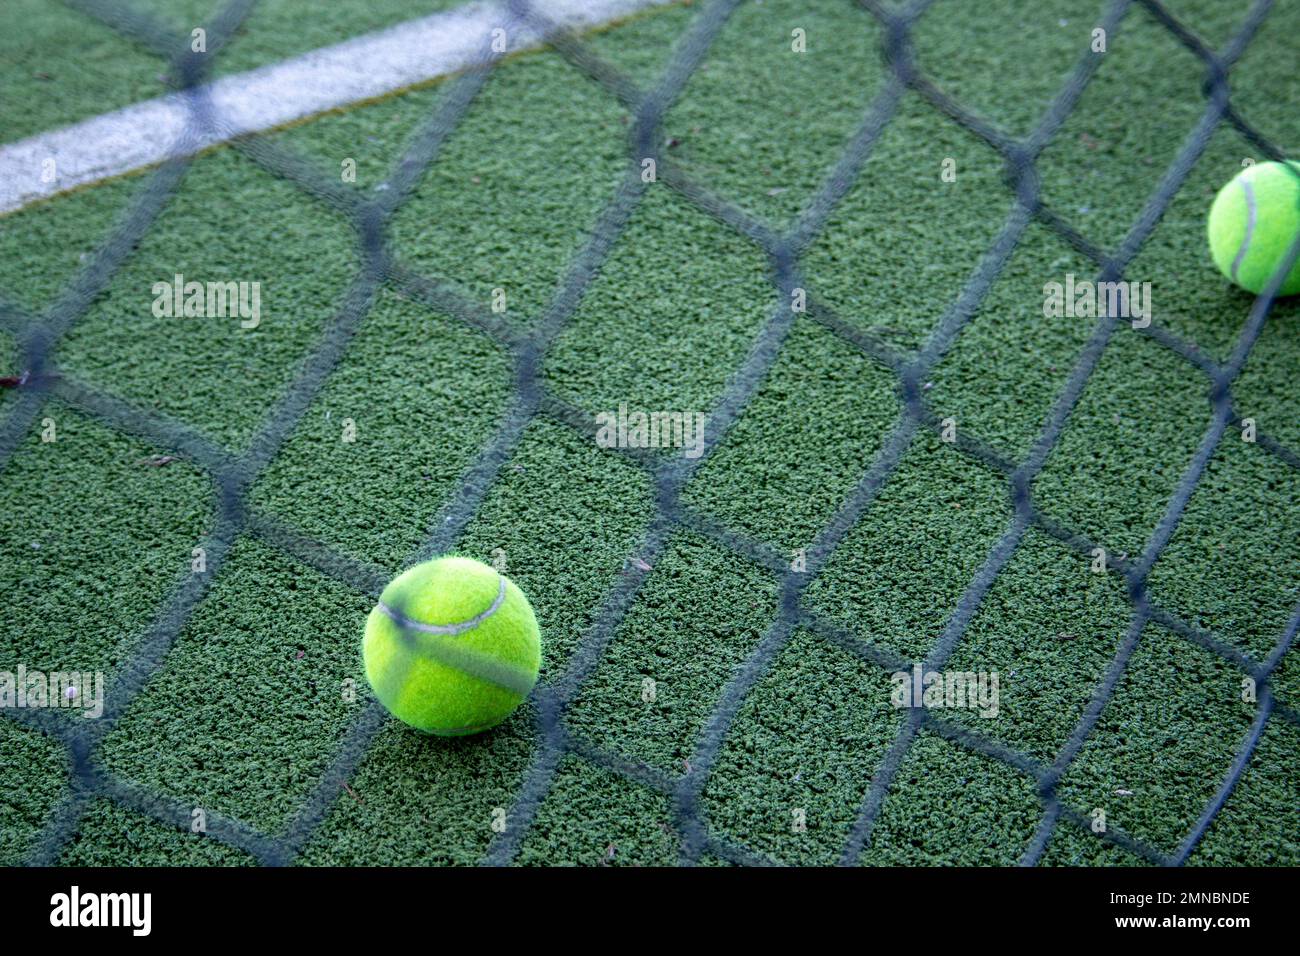 palle da tennis su un campo da paddle in erba artificiale visto dietro una recinzione Foto Stock